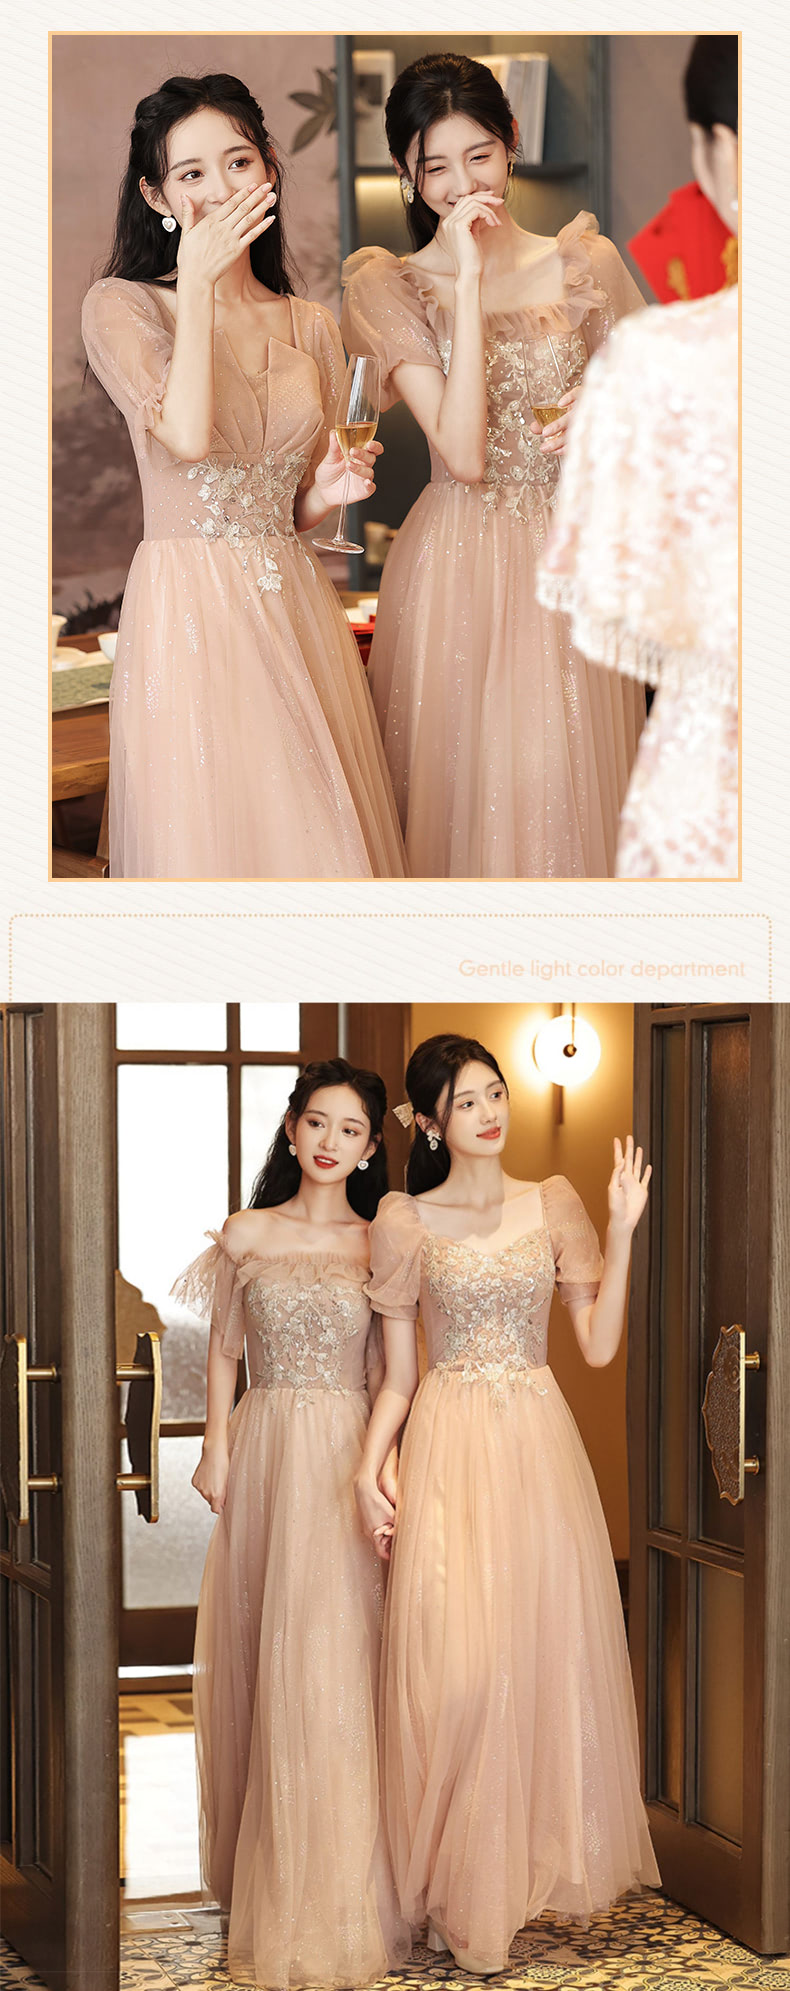 Stylish-Embroidery-Bridesmaid-Maxi-Dress-Elegance-Wedding-Gown12.jpg